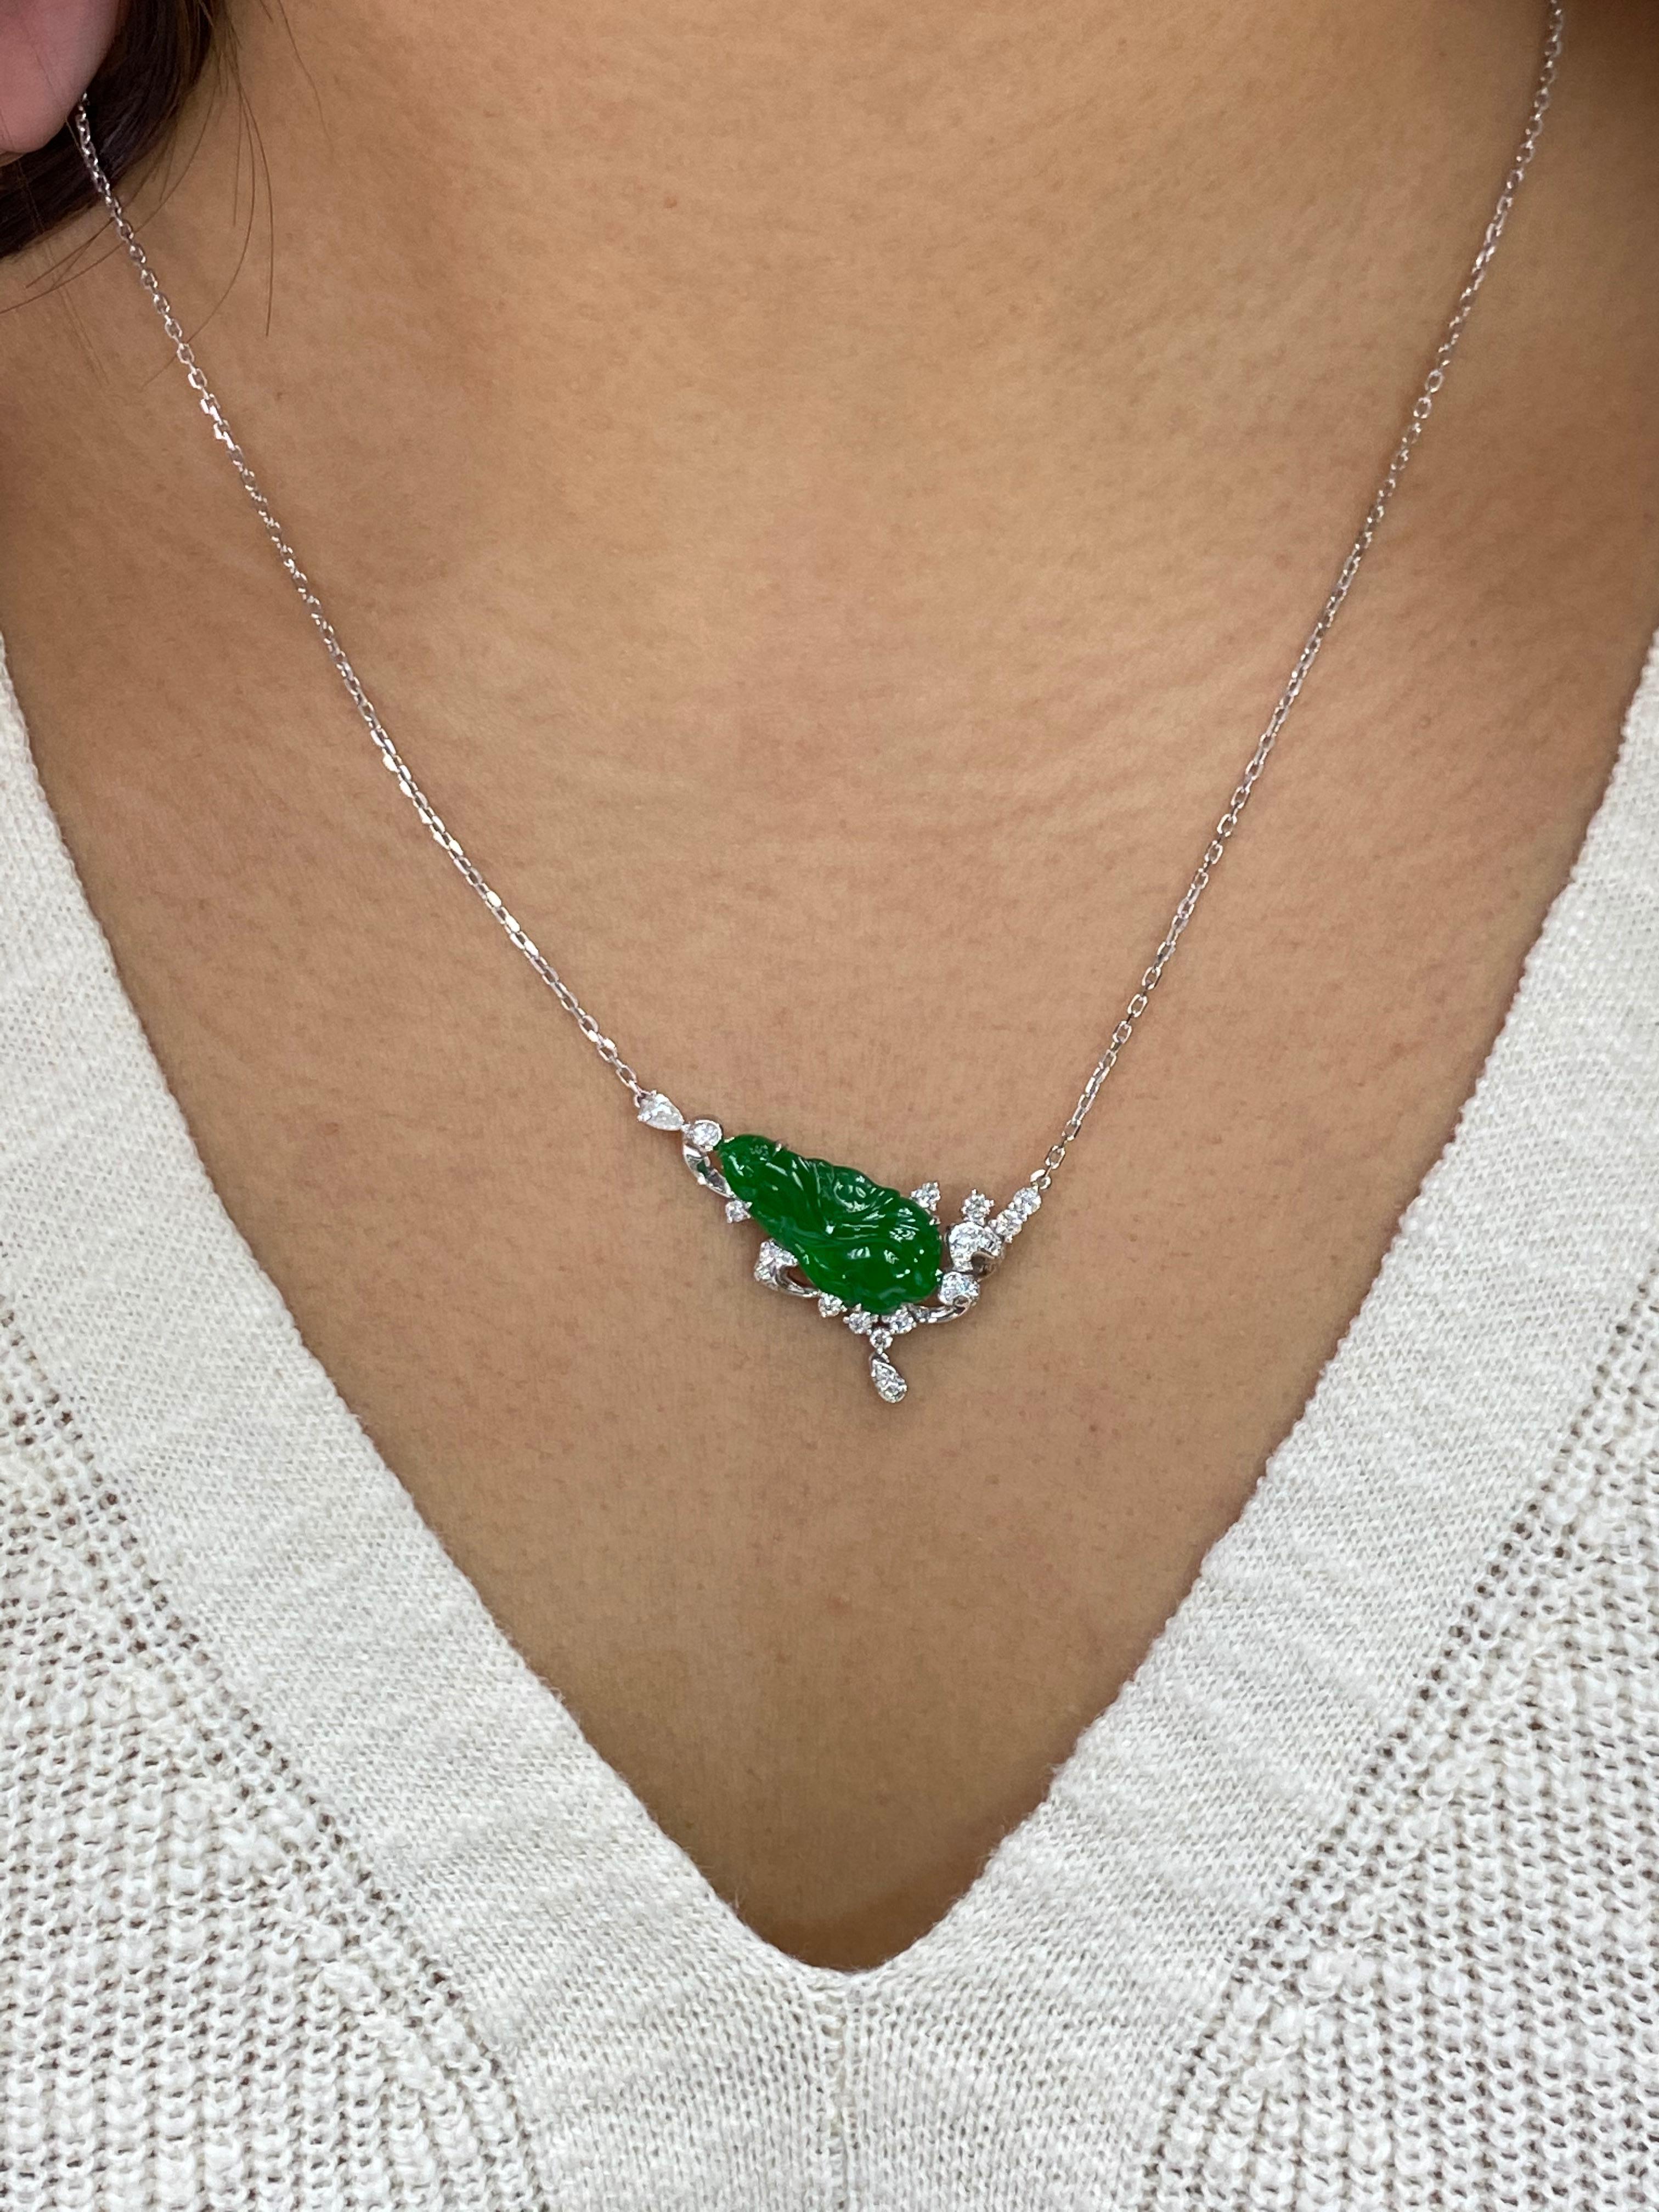 Hier ist eine natürliche Jadeit Jade und Diamant-Anhänger mit ausgezeichneten besten kaiserlichen grünen Farbe. Es ist von 2 verschiedenen Labors zertifiziert. Der Anhänger ist in 18 Karat Weißgold und Diamanten gefasst. Der Anhänger ist mit